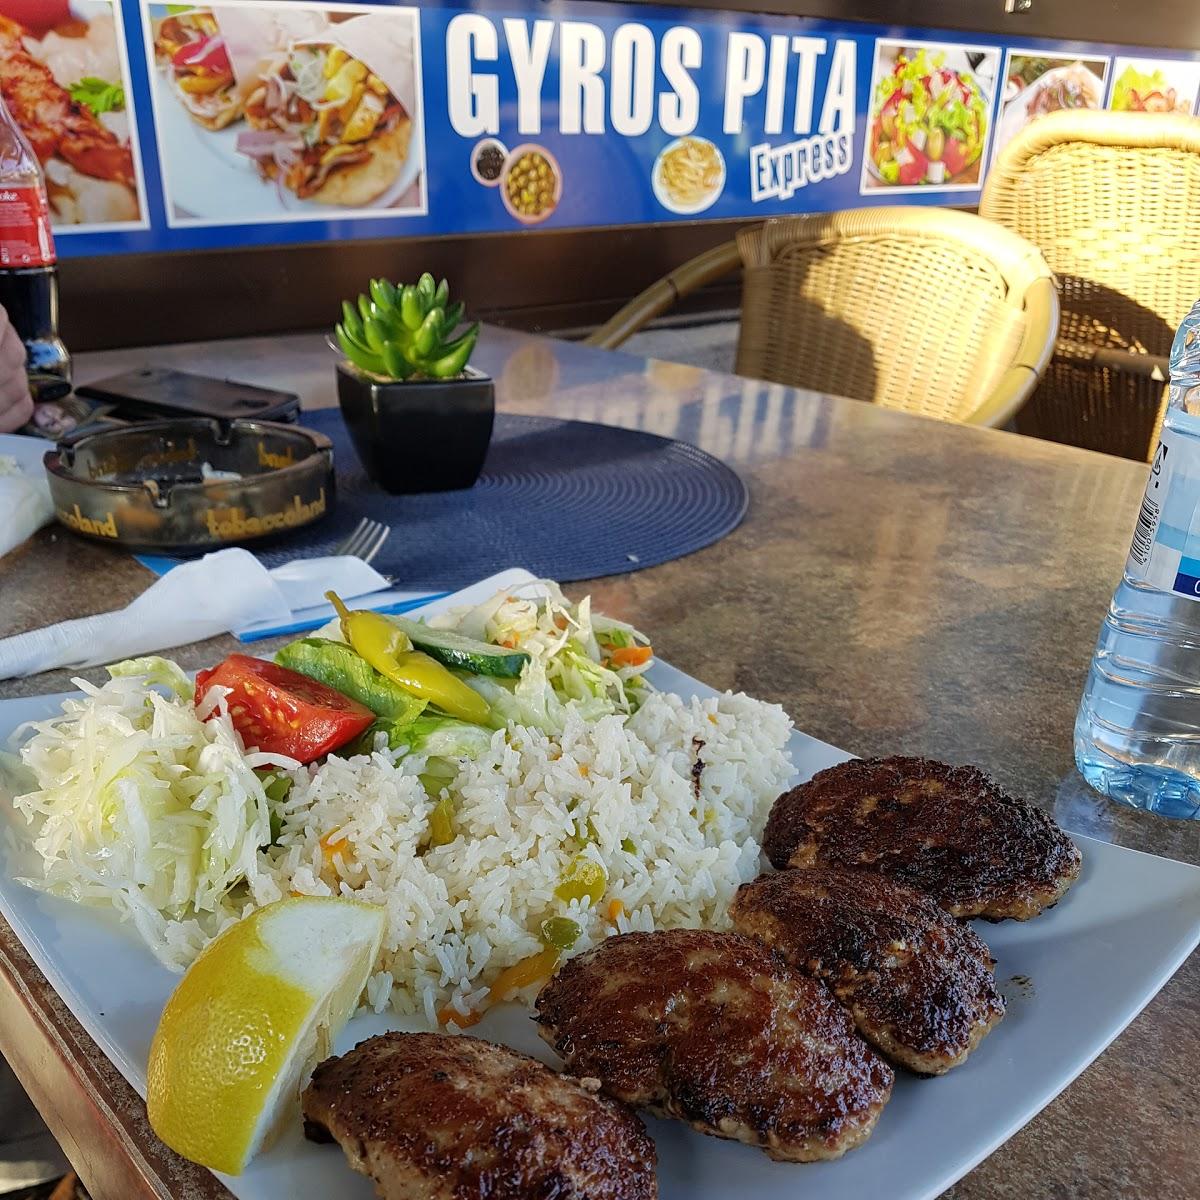 Restaurant "Gyros Pita Express" in Viersen